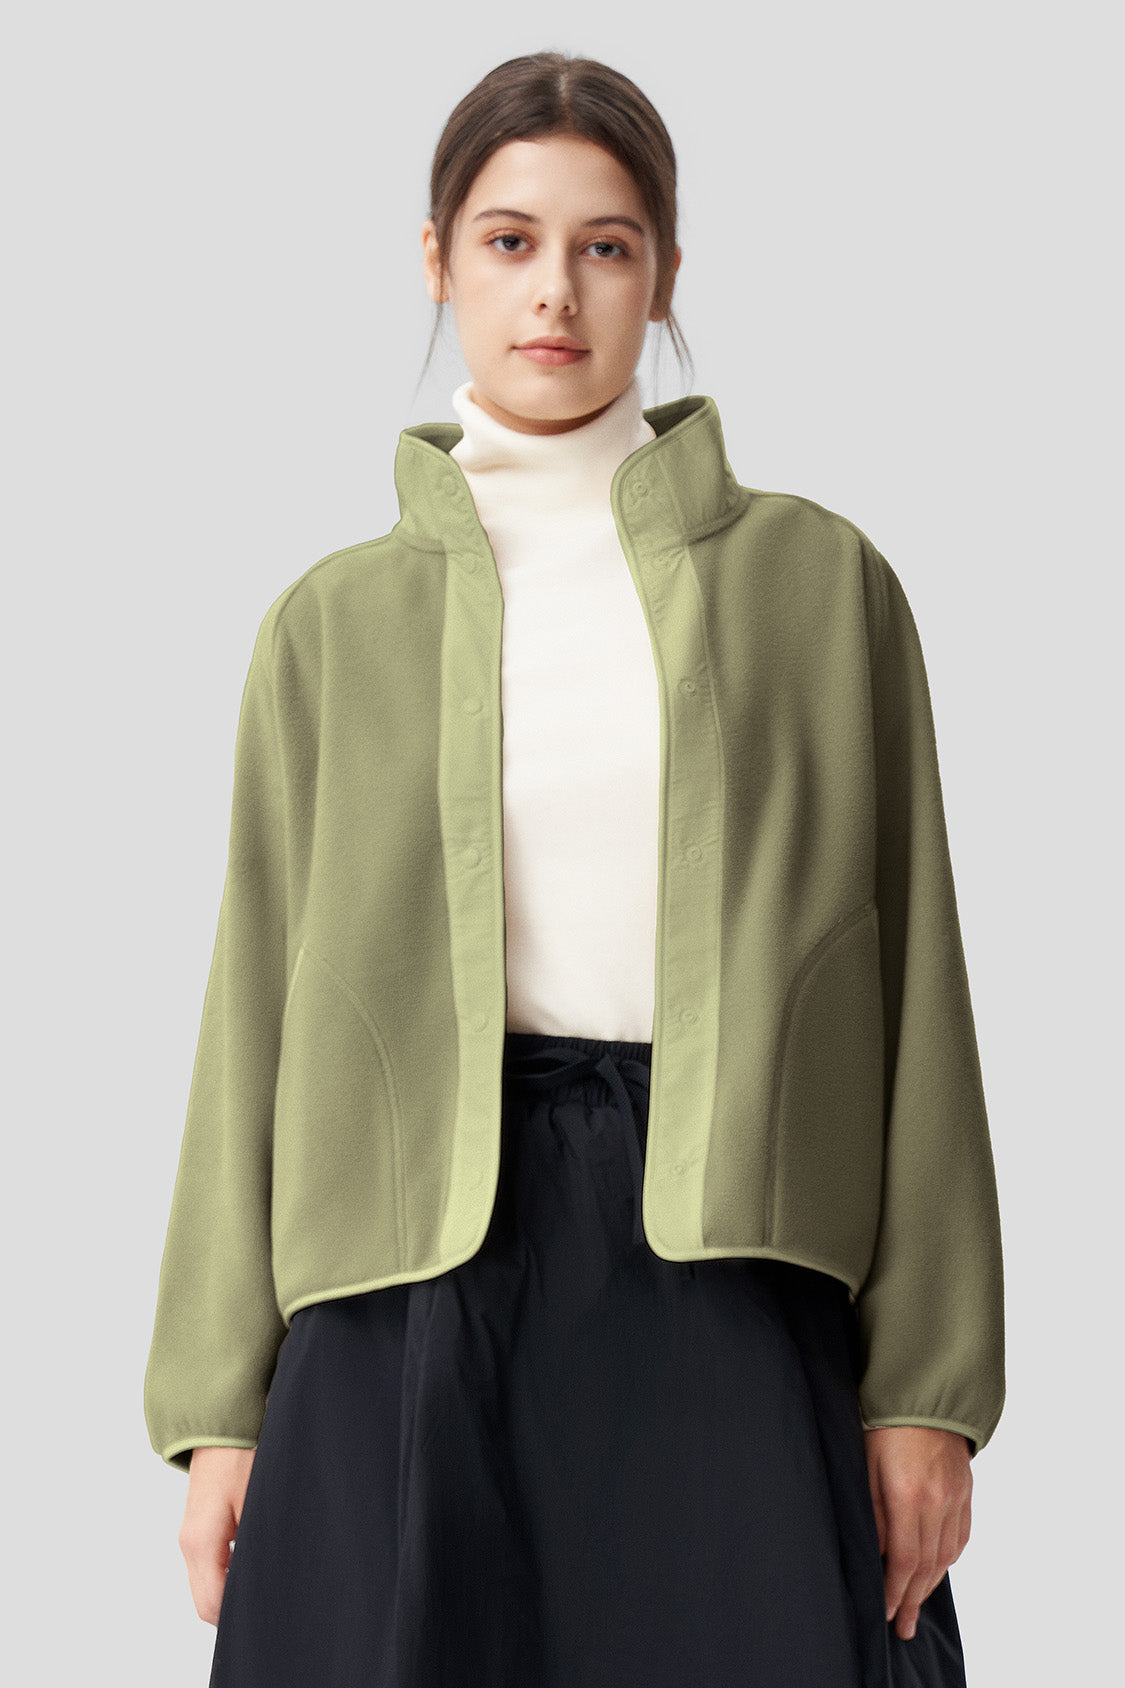 beneunder women's lightweight micro fleece jacket #color_Deep bamboo green